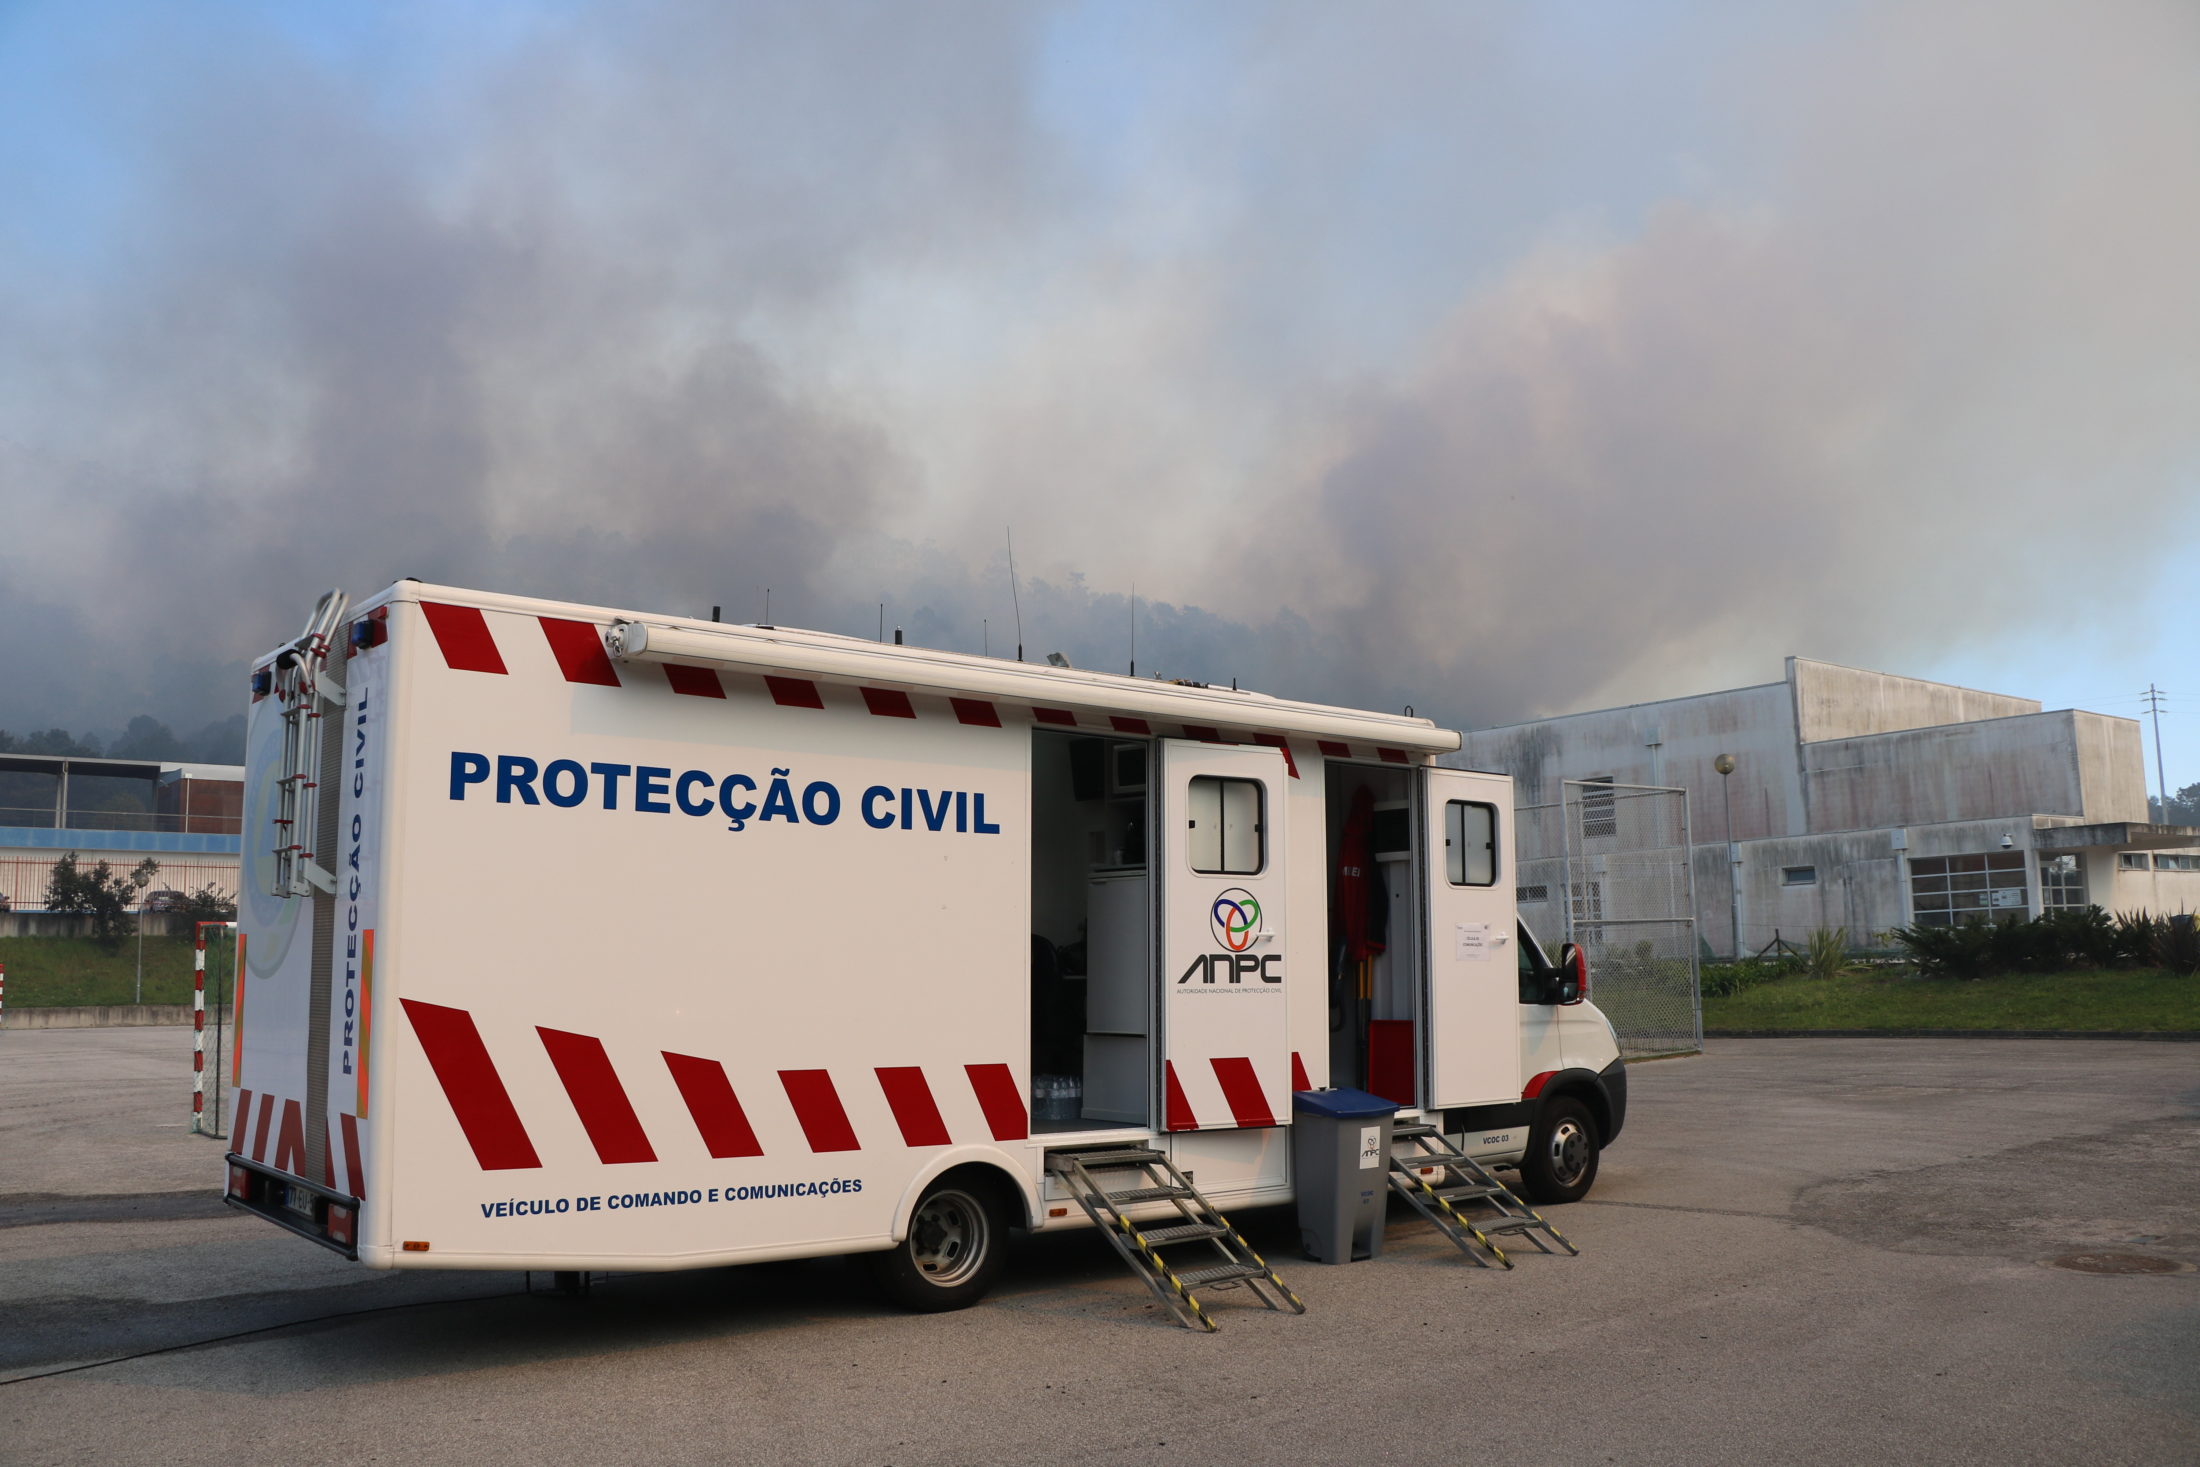 Plano distrital de combate a incêndios de Viana apresentado fora de prazo